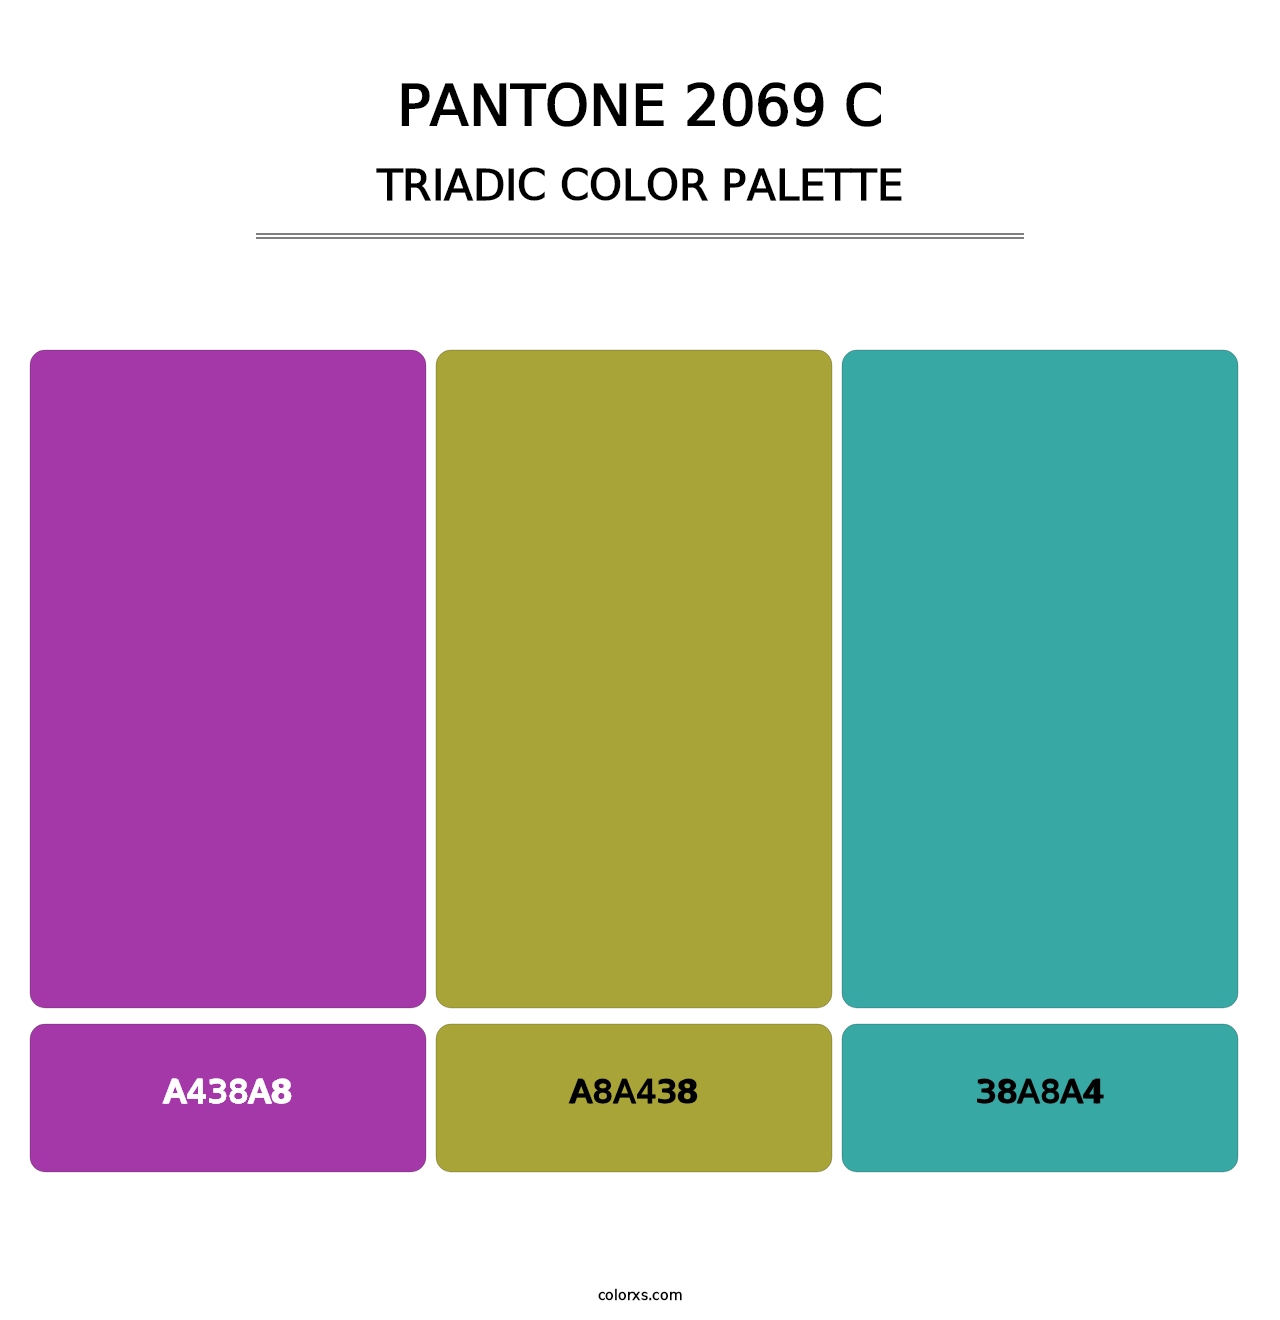 PANTONE 2069 C - Triadic Color Palette